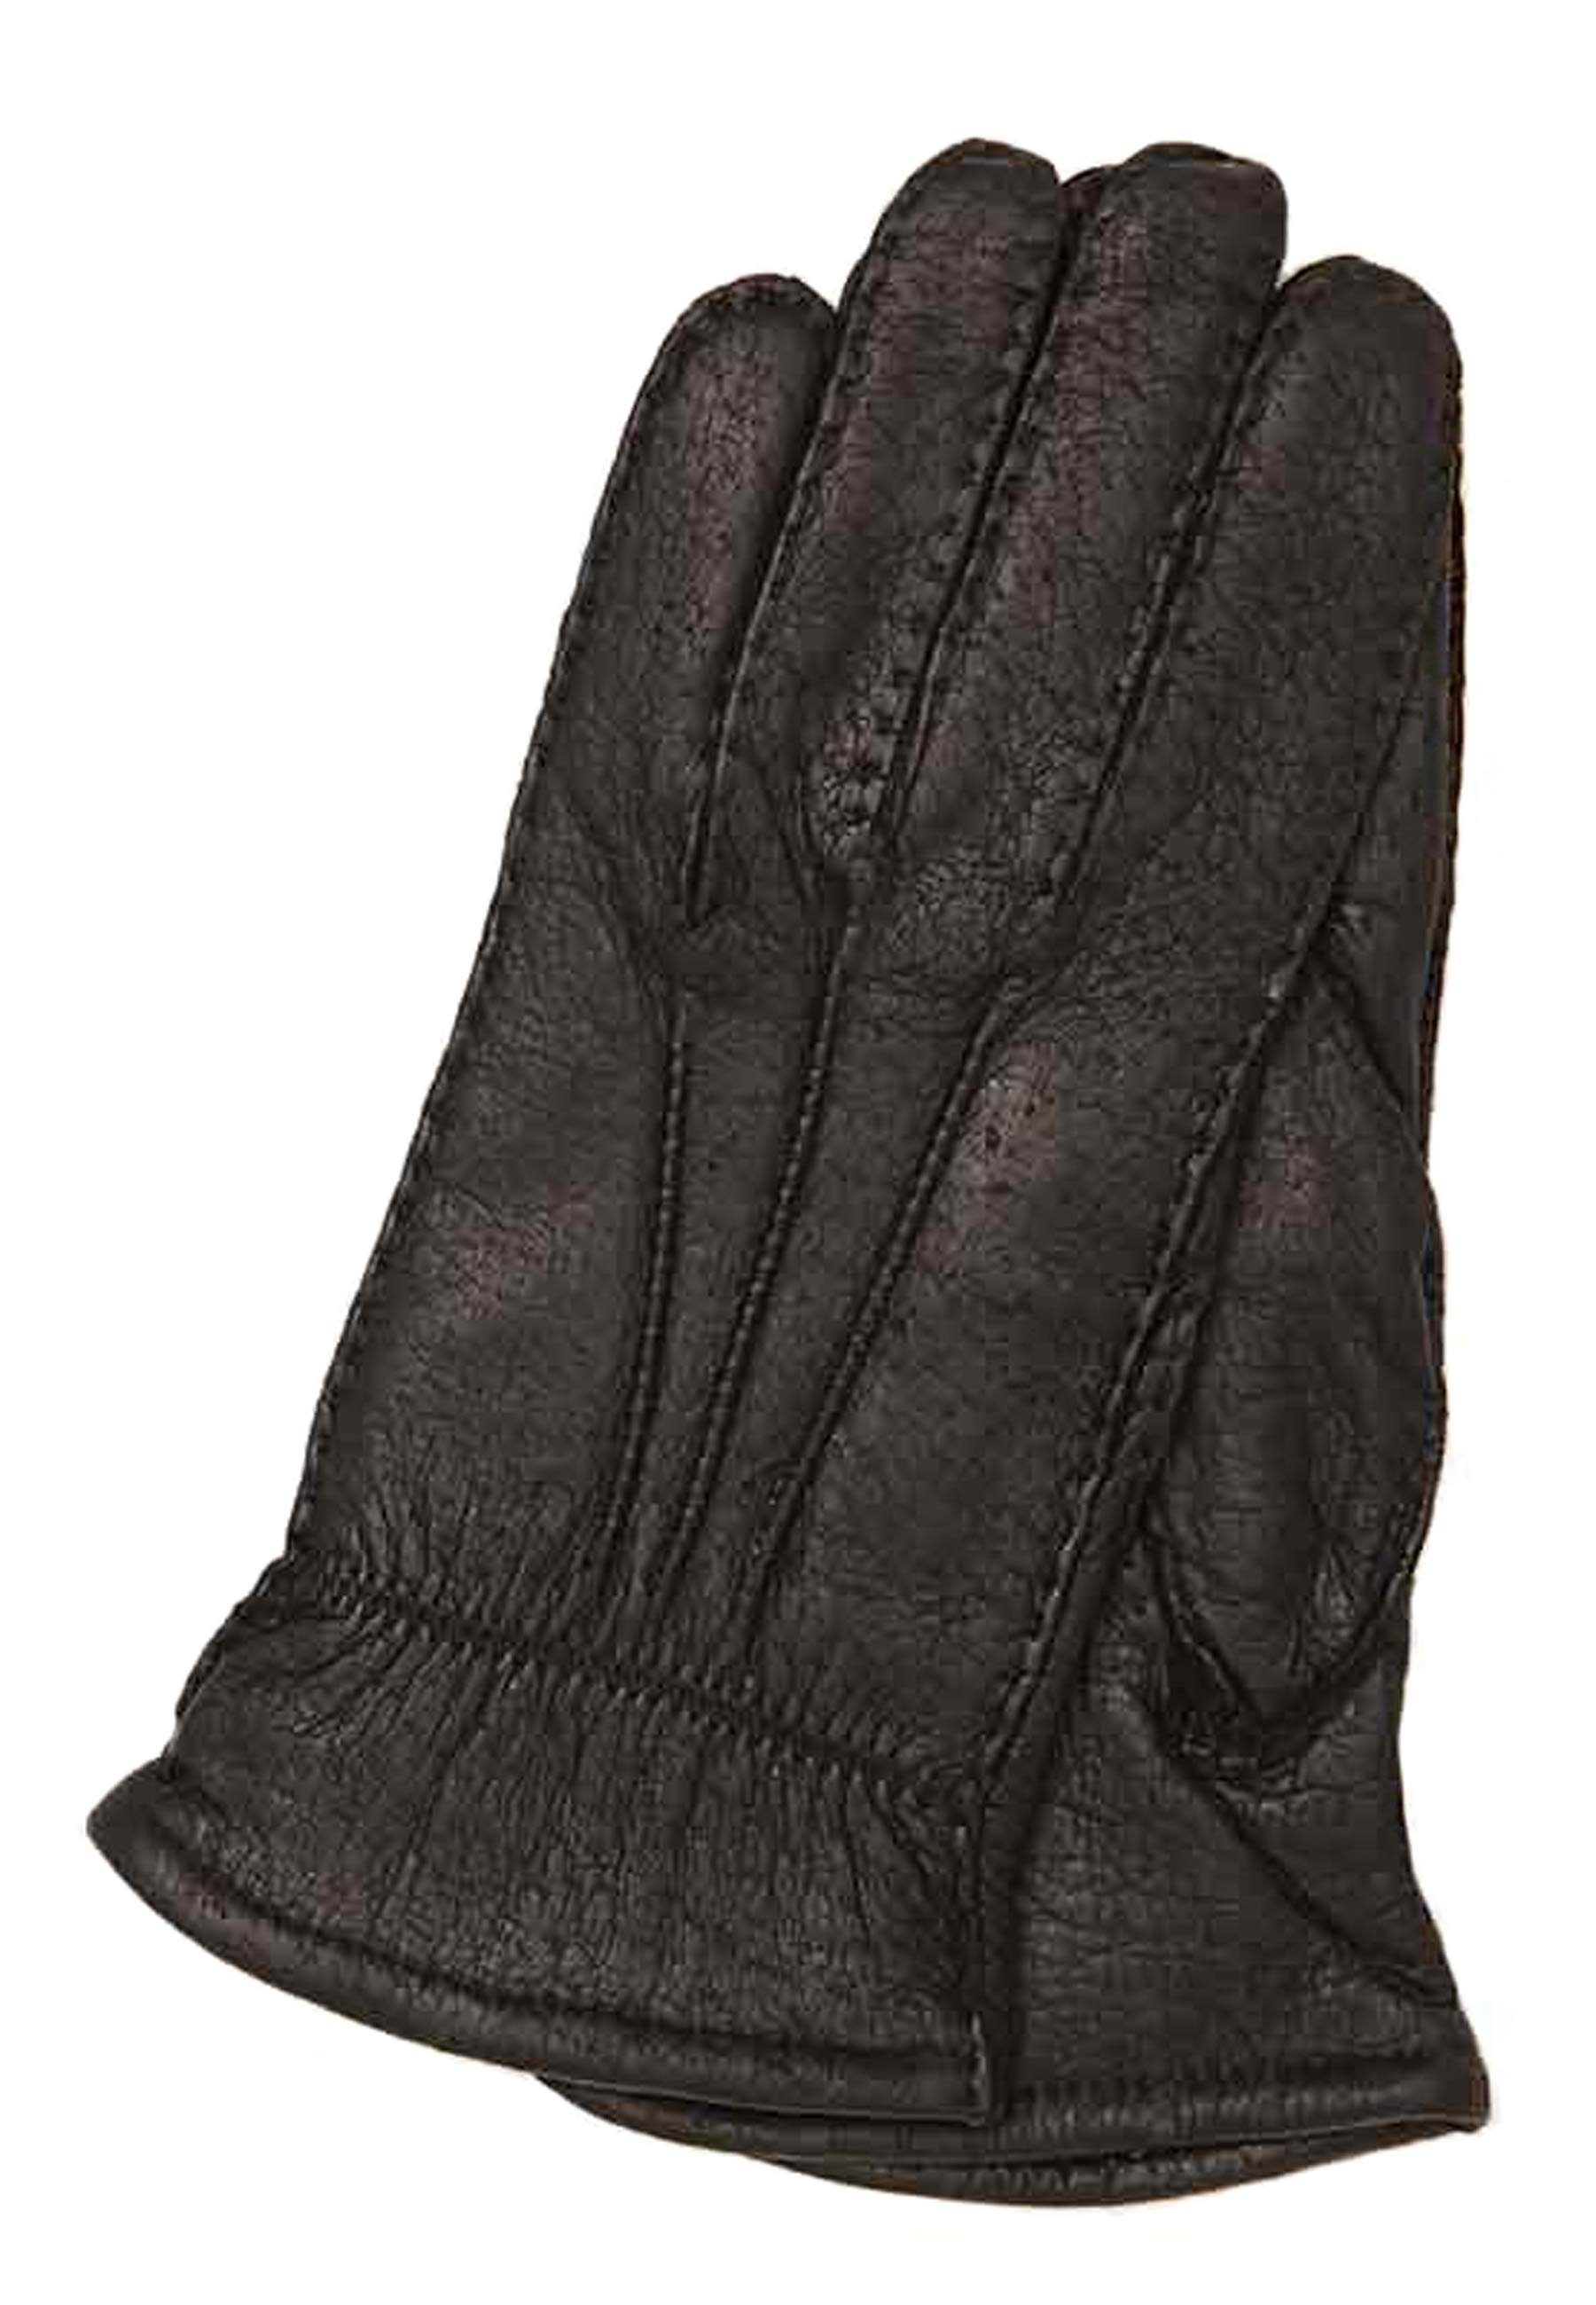 GRETCHEN Lederhandschuhe aus echtem Peccary-Leder schwarz | Handschuhe